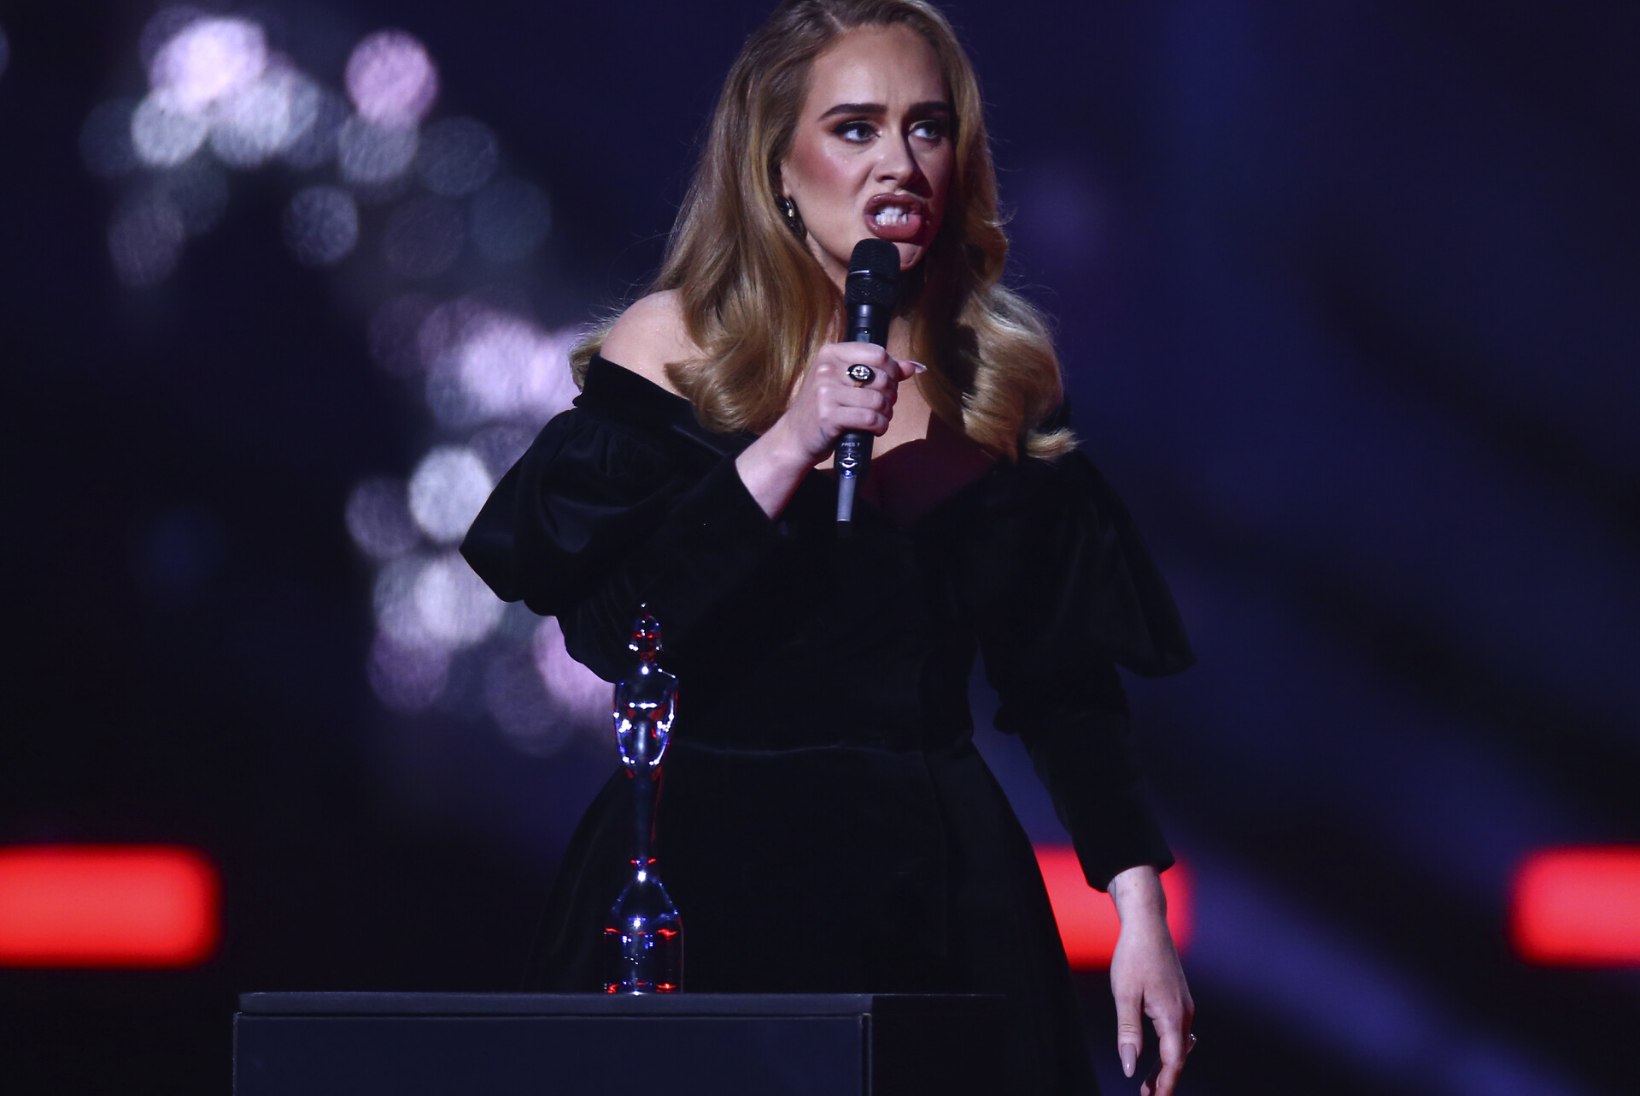 Esimese sooneutraalse Briti muusikaauhinna võitnud Adele suskas võidukõnesse mürginoole